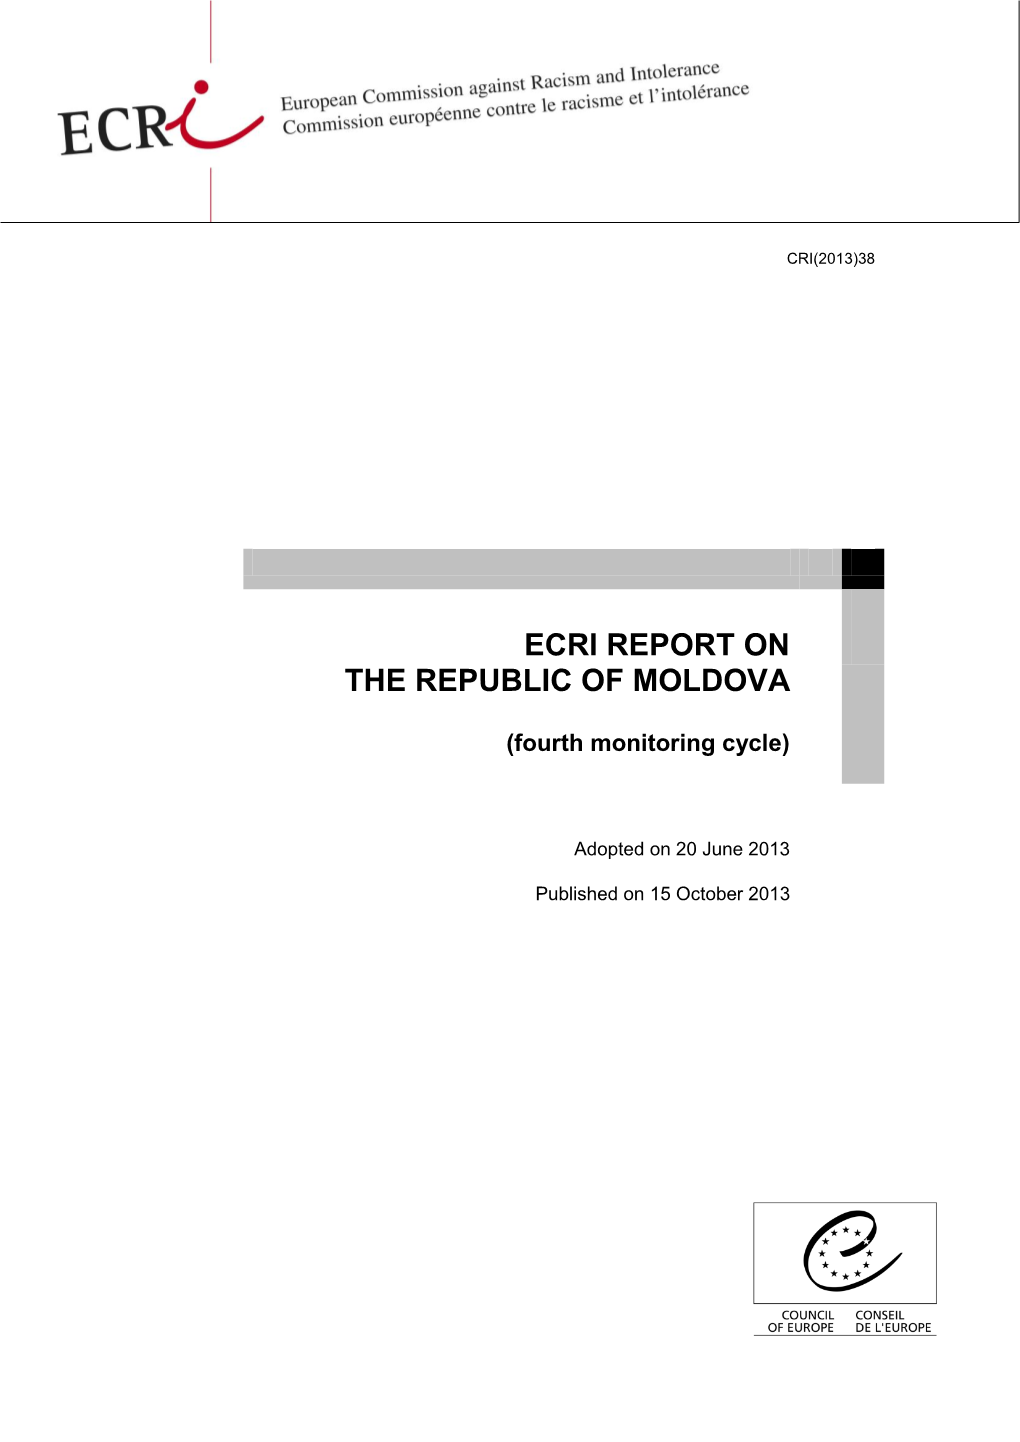 Ecri Report on the Republic of Moldova